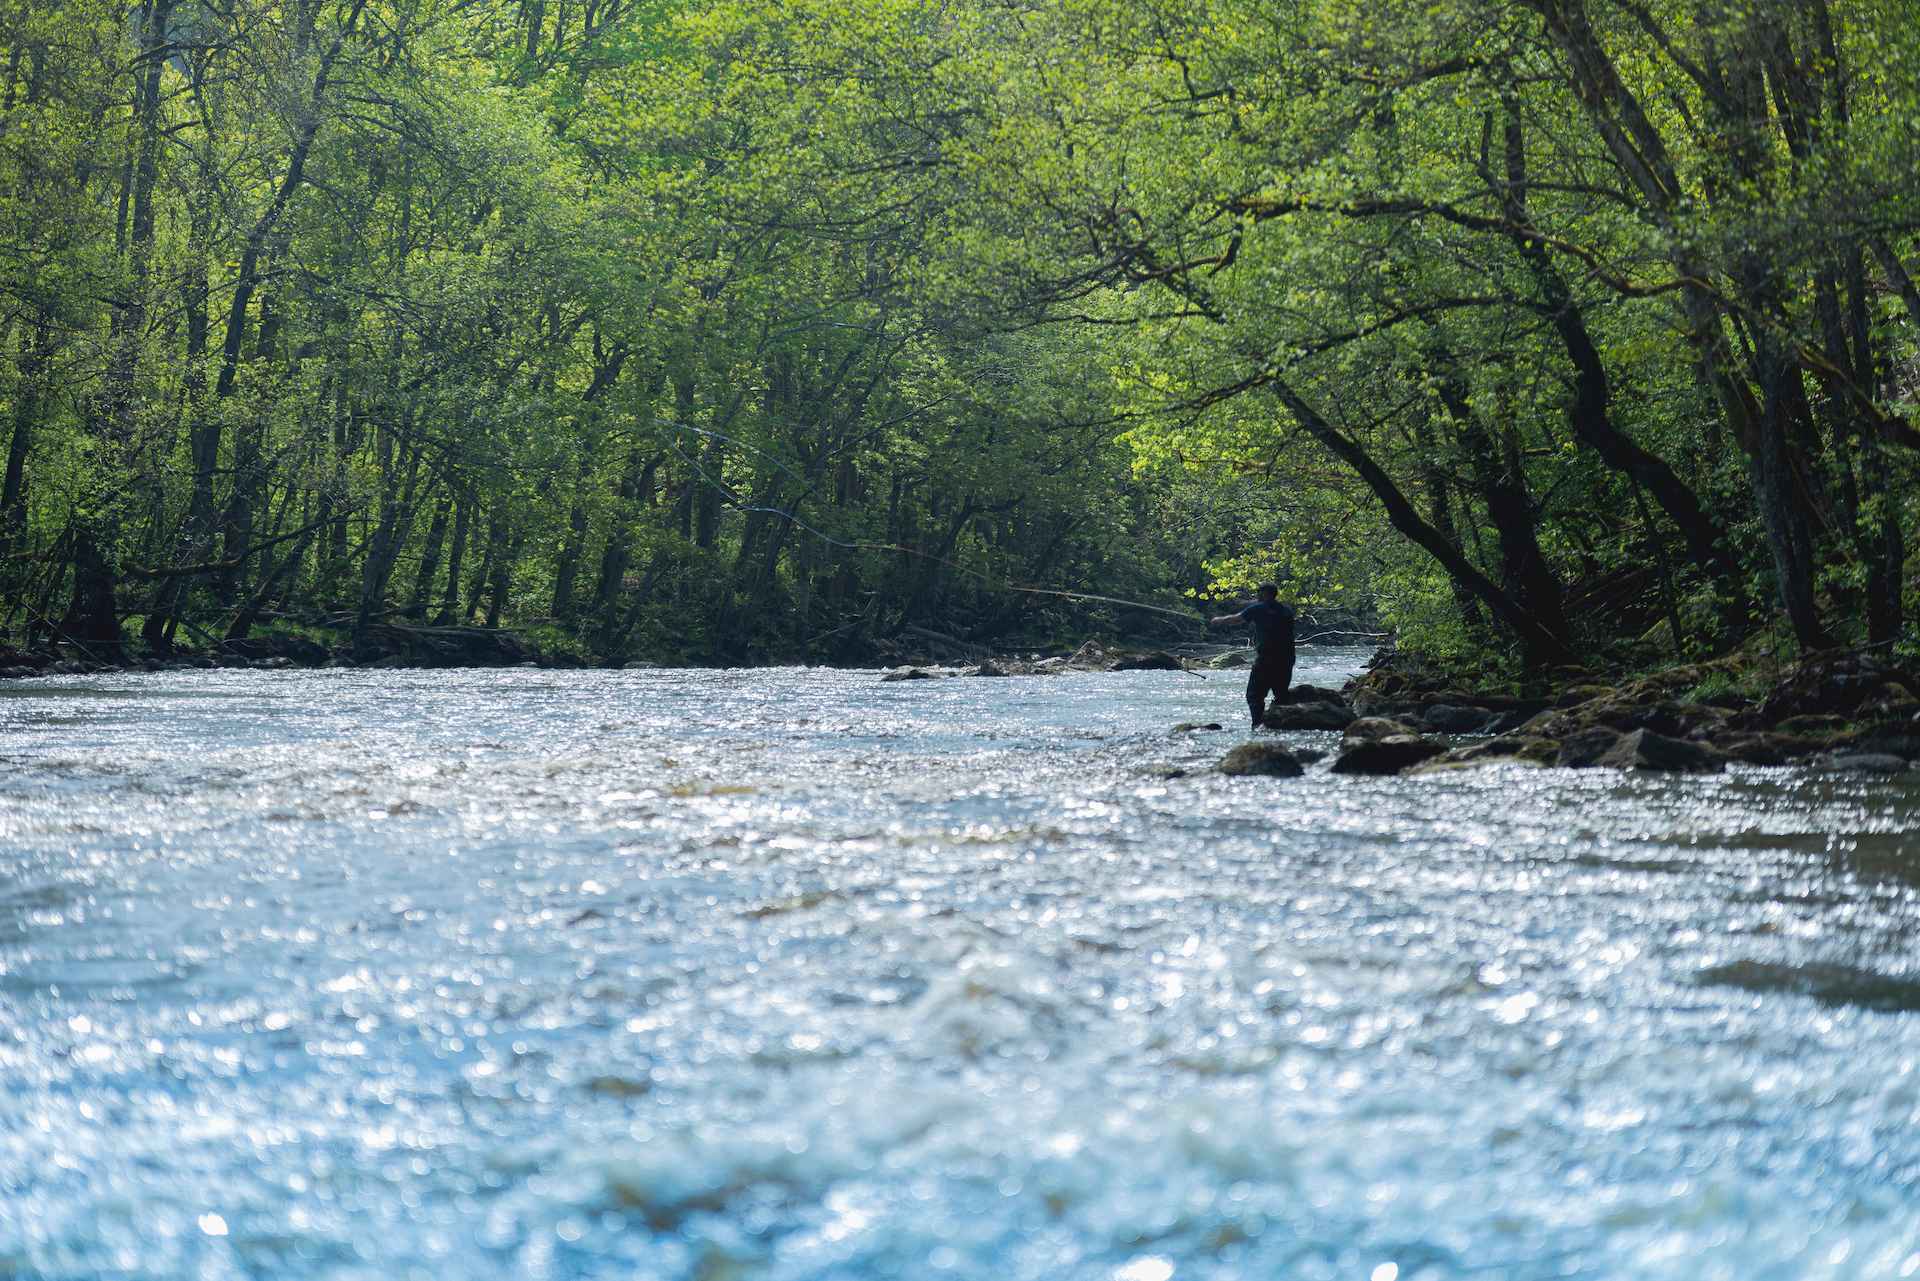 Een persoon is aan het vliegvissen in de rivier de Örekil. De rivier is omgeven door groen.